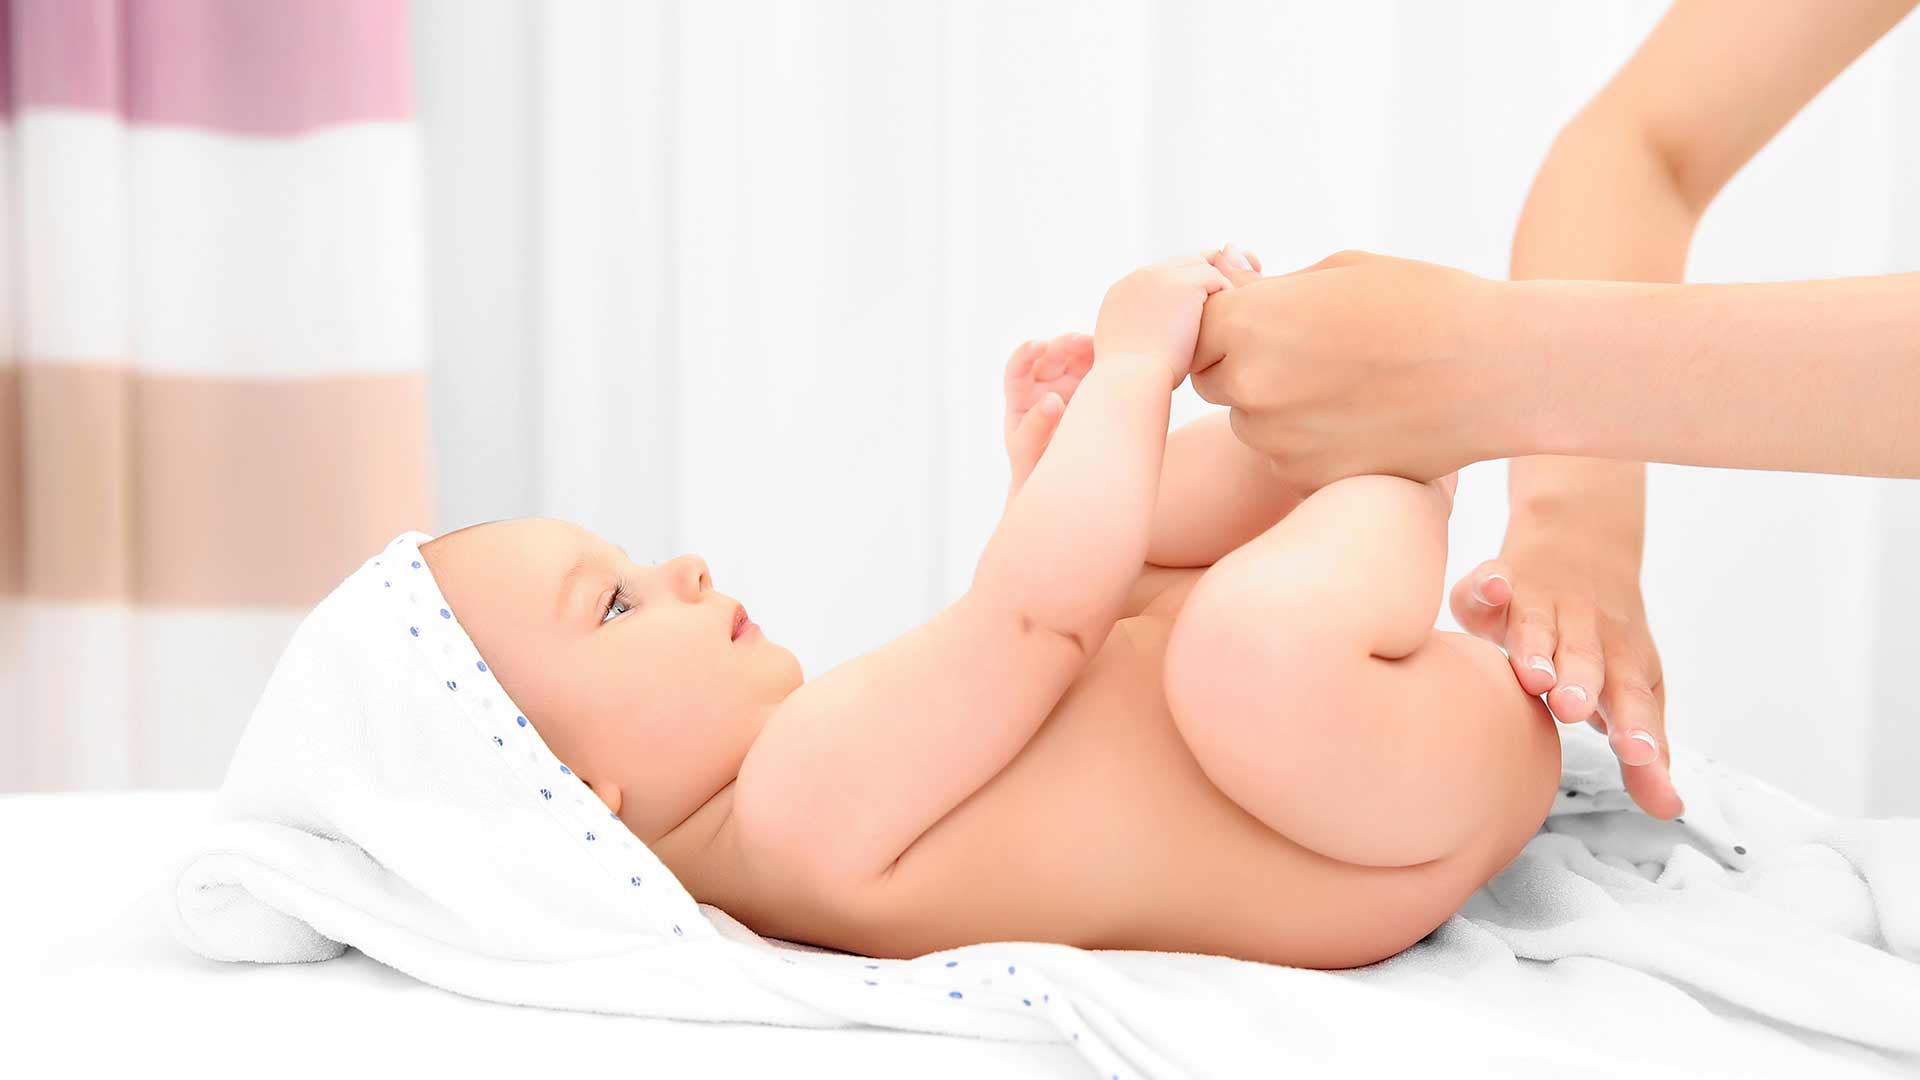 Kit de cuidado para bebés recién nacidos, Kit de higiene para